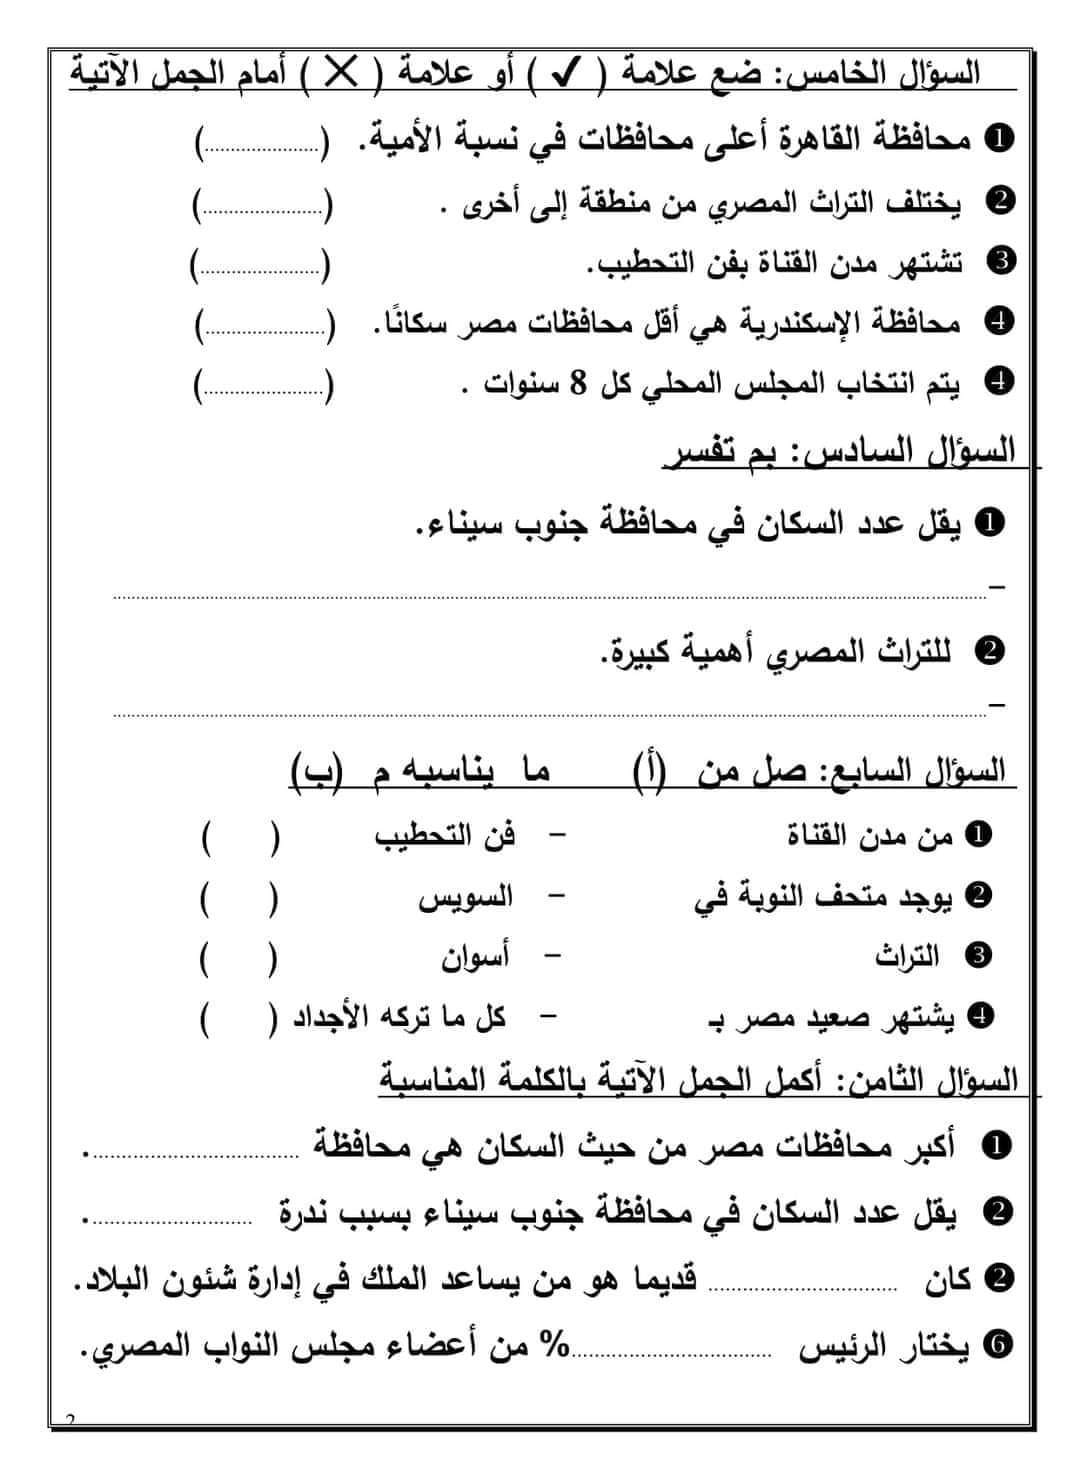 امتحانات عربي وعلوم ودراسات لرابعة ابتدائي حتى منهج مارس - امتحانات رابعة ابتدائي